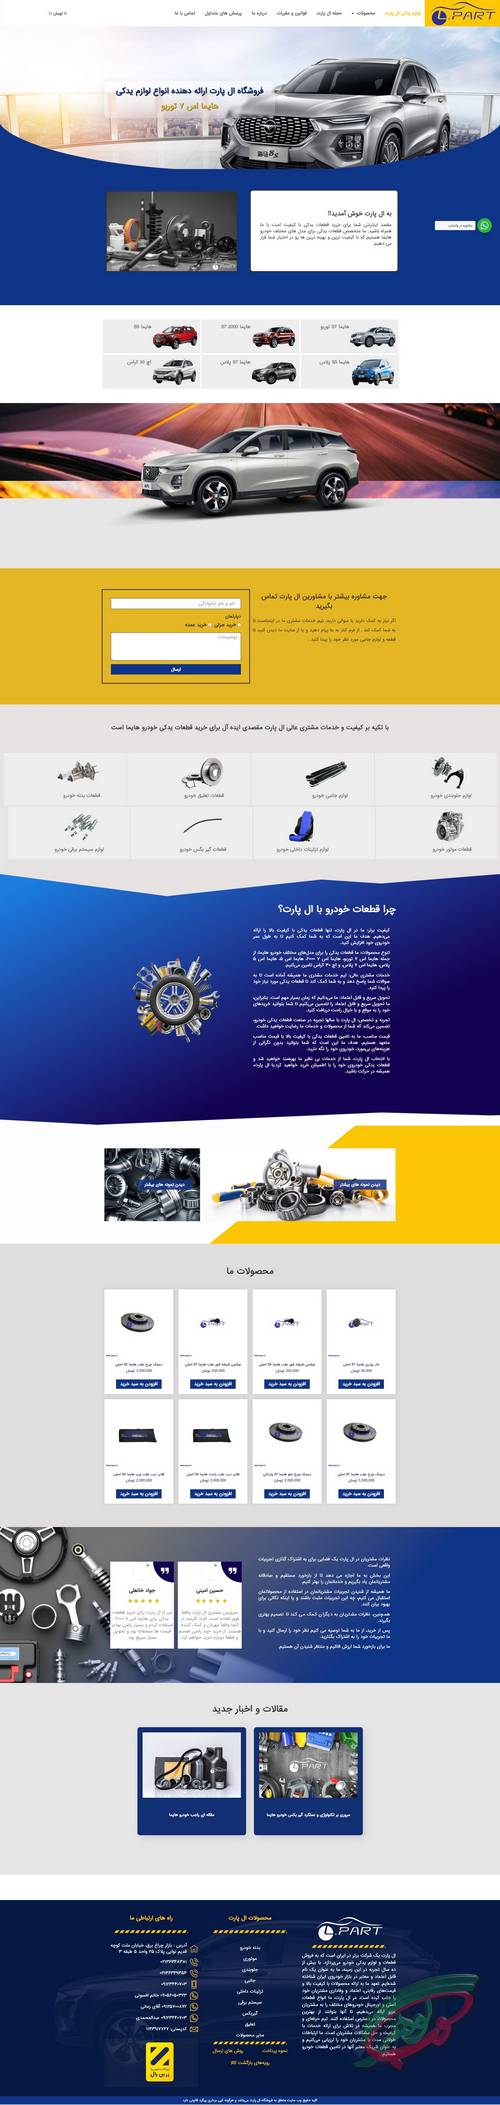 ال پارت از نمونه طراحی سایت شرکتی وب گوهر